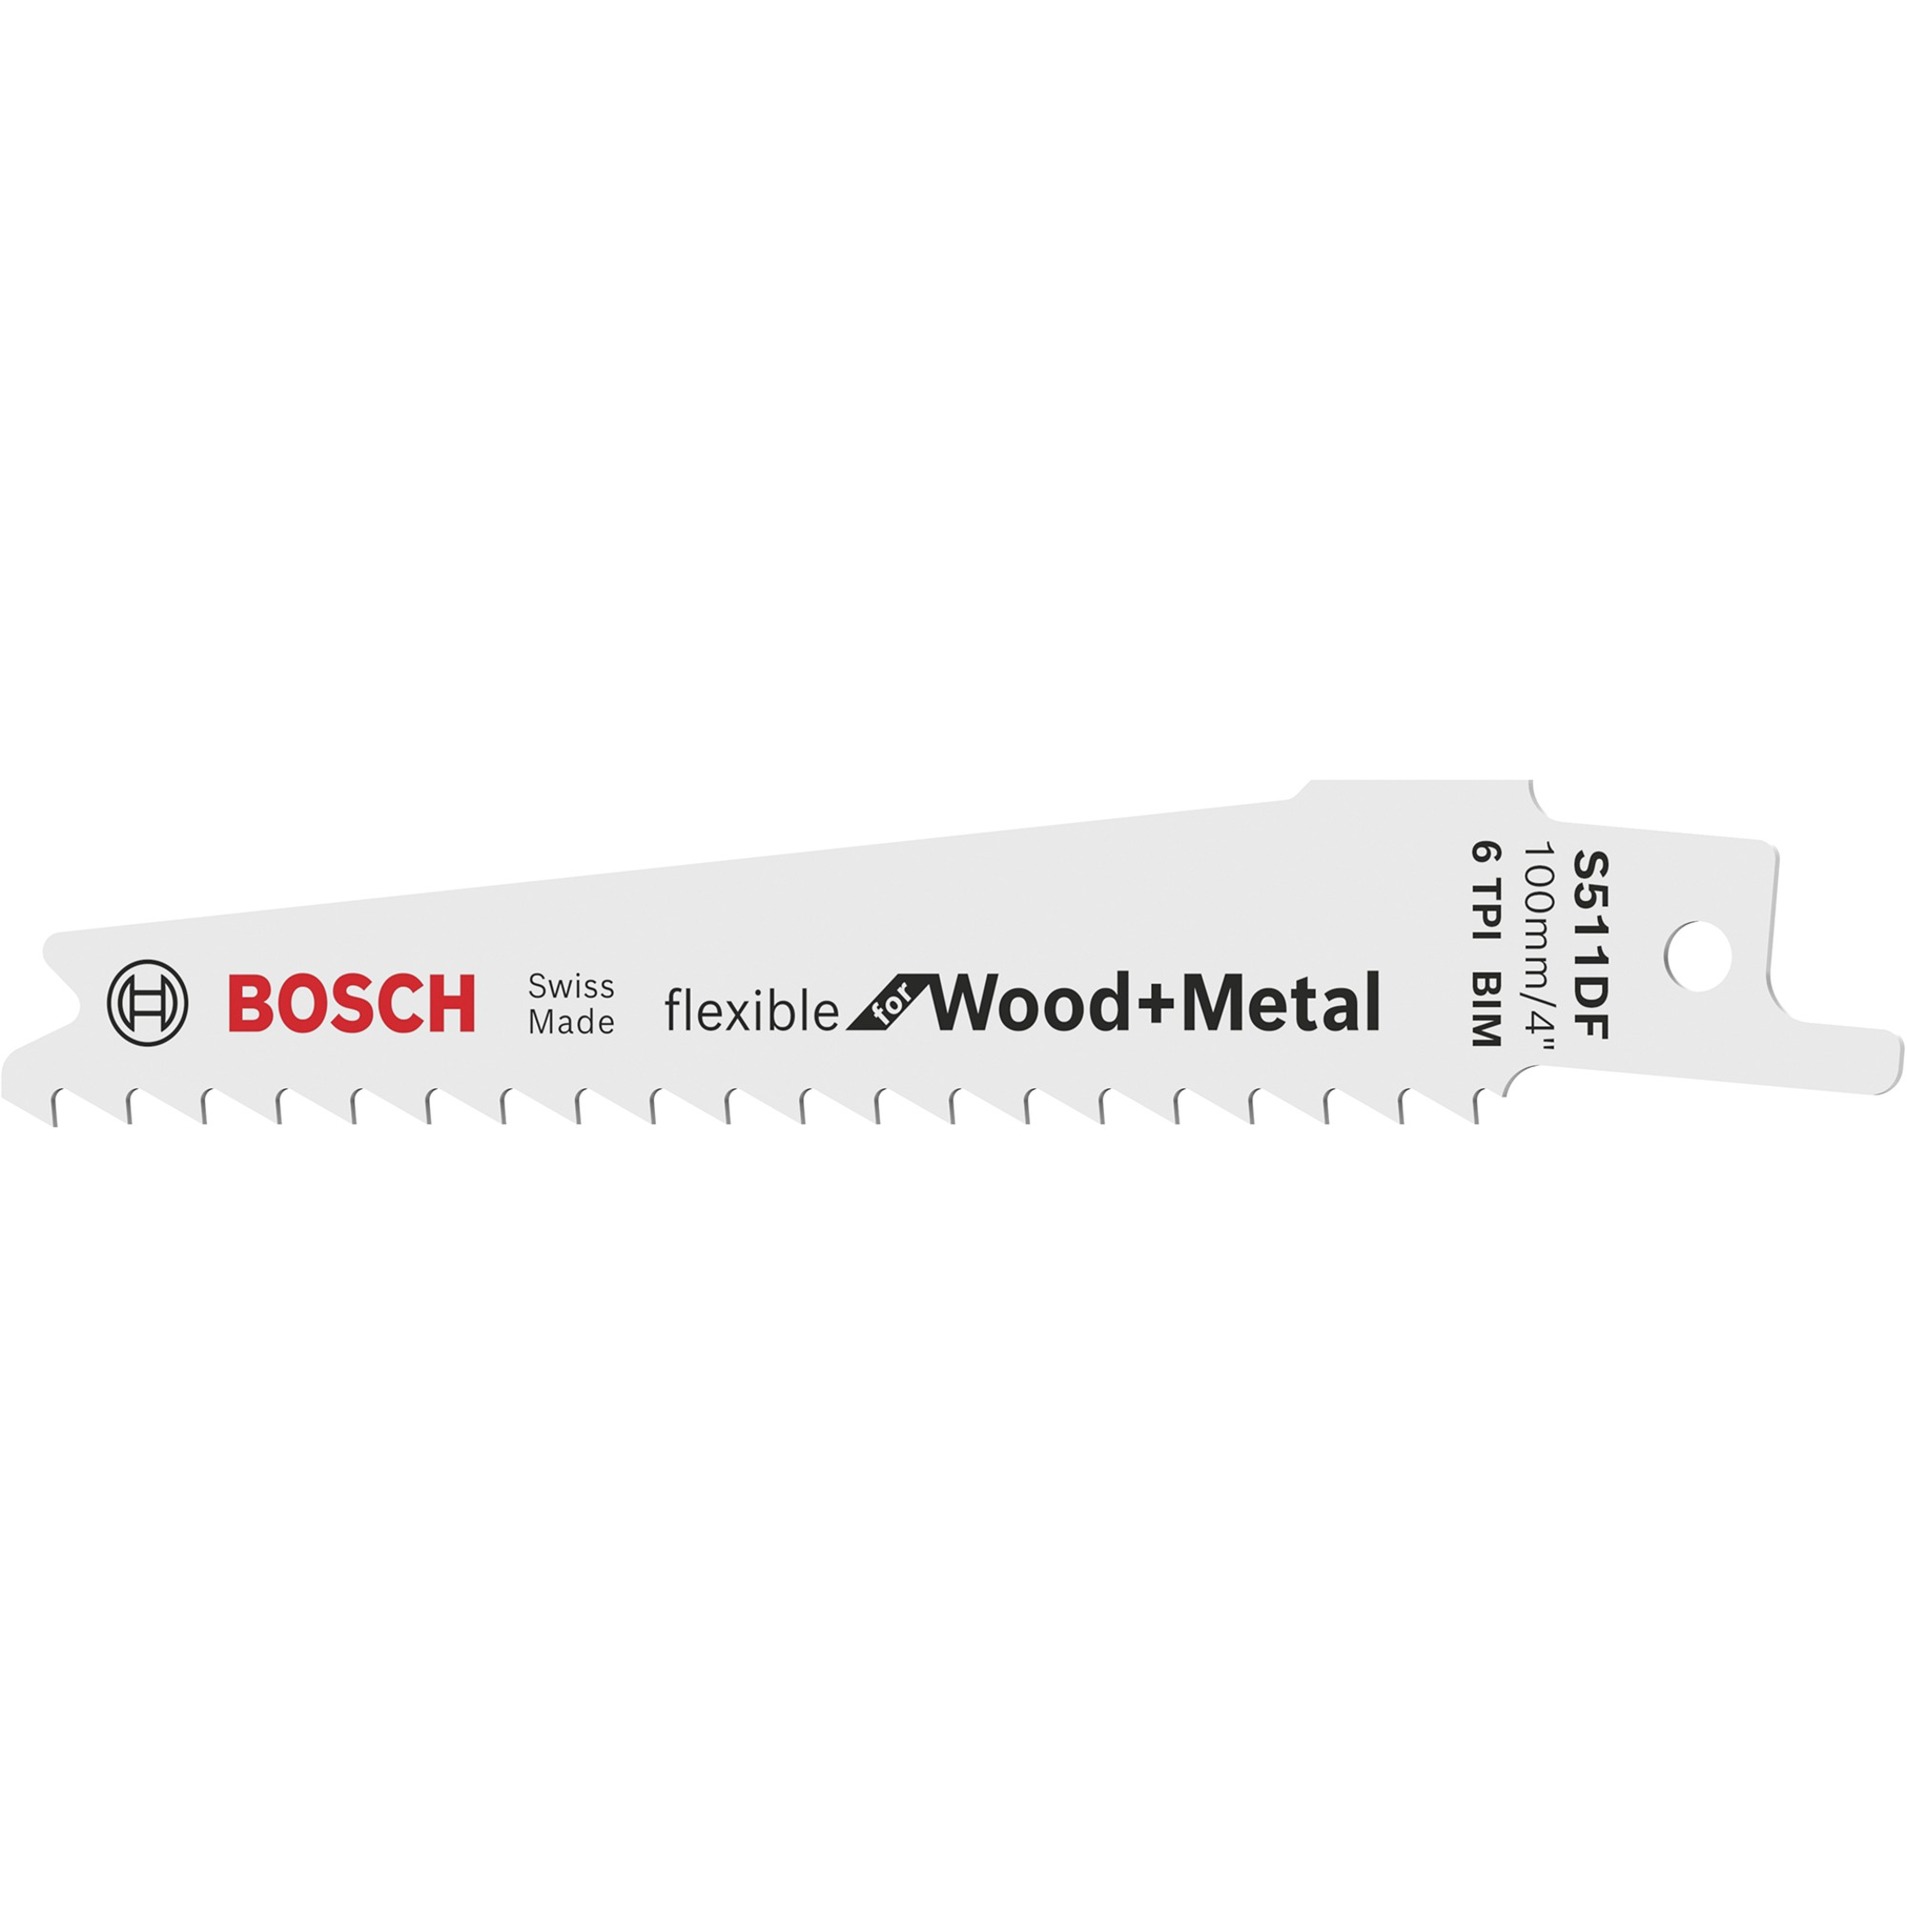 Säbelsägeblatt S 511 DF Flexible for Wood and Metal, 5 Stück von Bosch